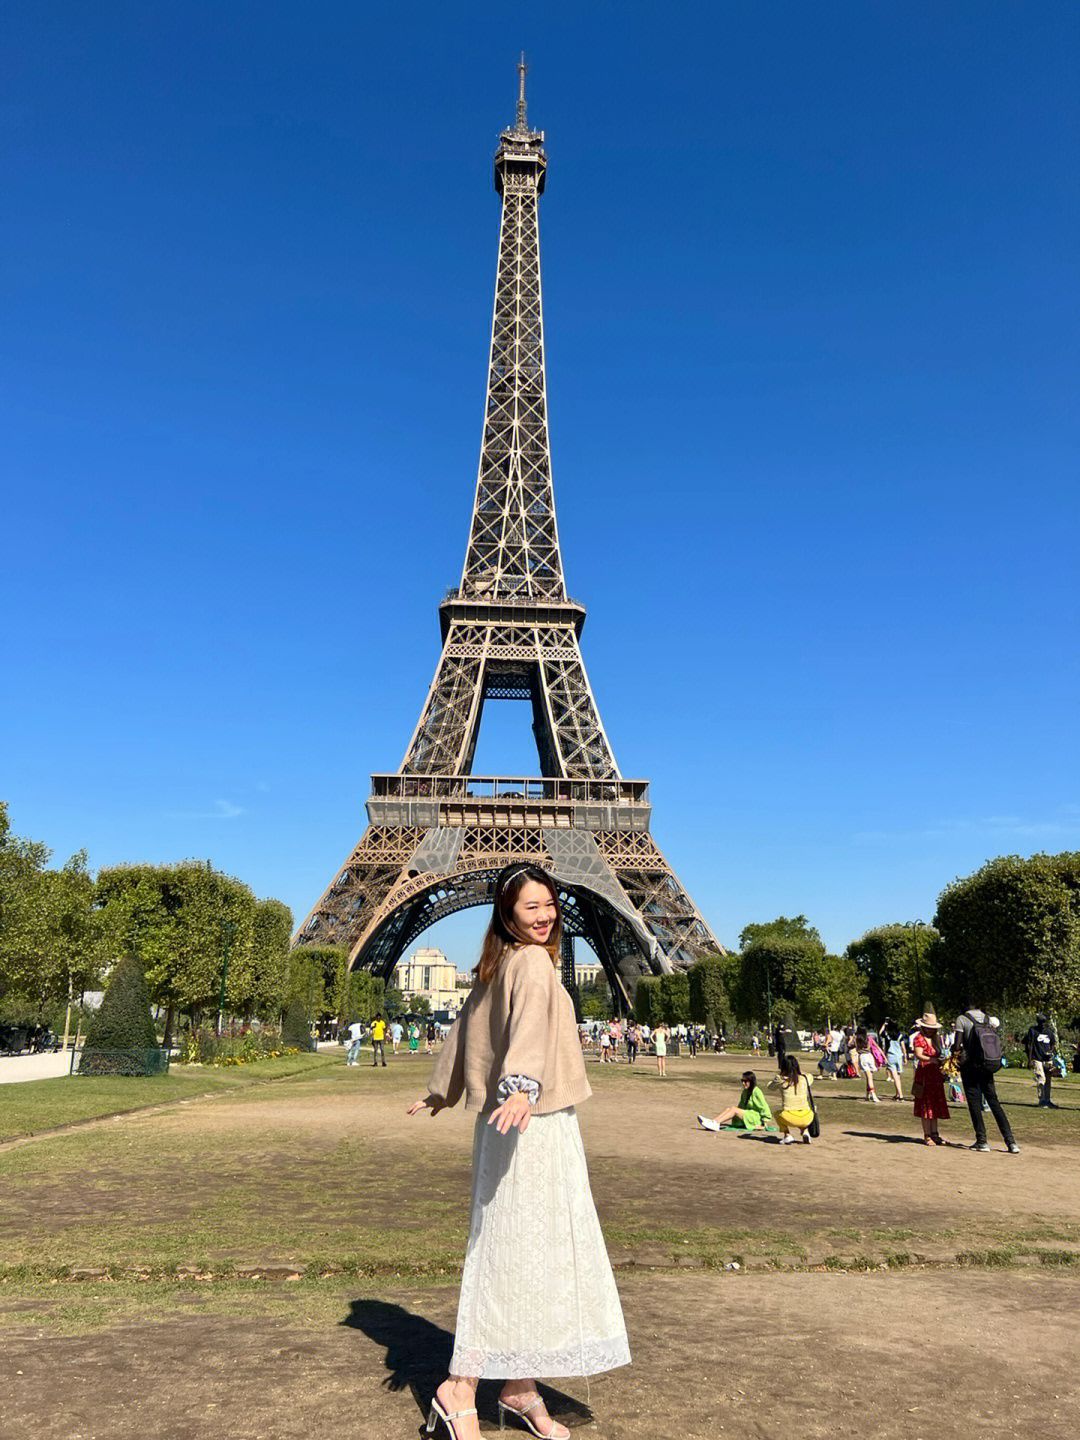 巴黎铁塔游客照图片